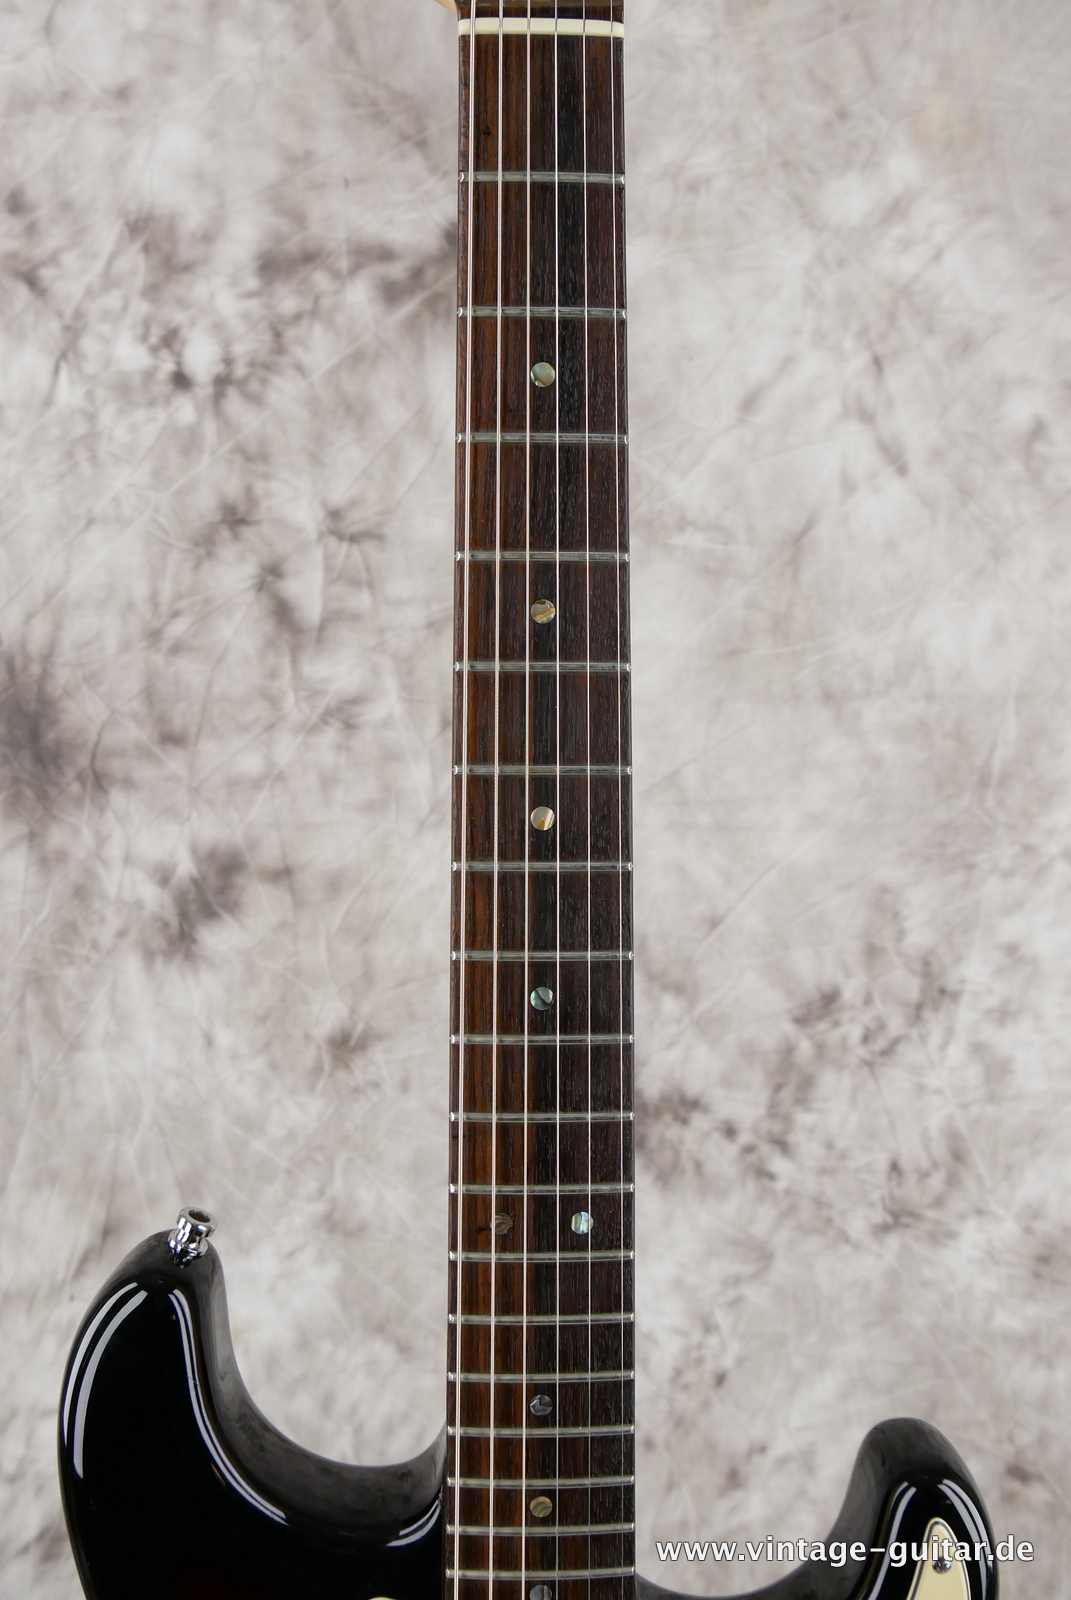 img/vintage/5280/Fender_Startocaster_American_Deluxe_sunburst_samarium-cobalt-noiseless_tremolo_2005-005.JPG